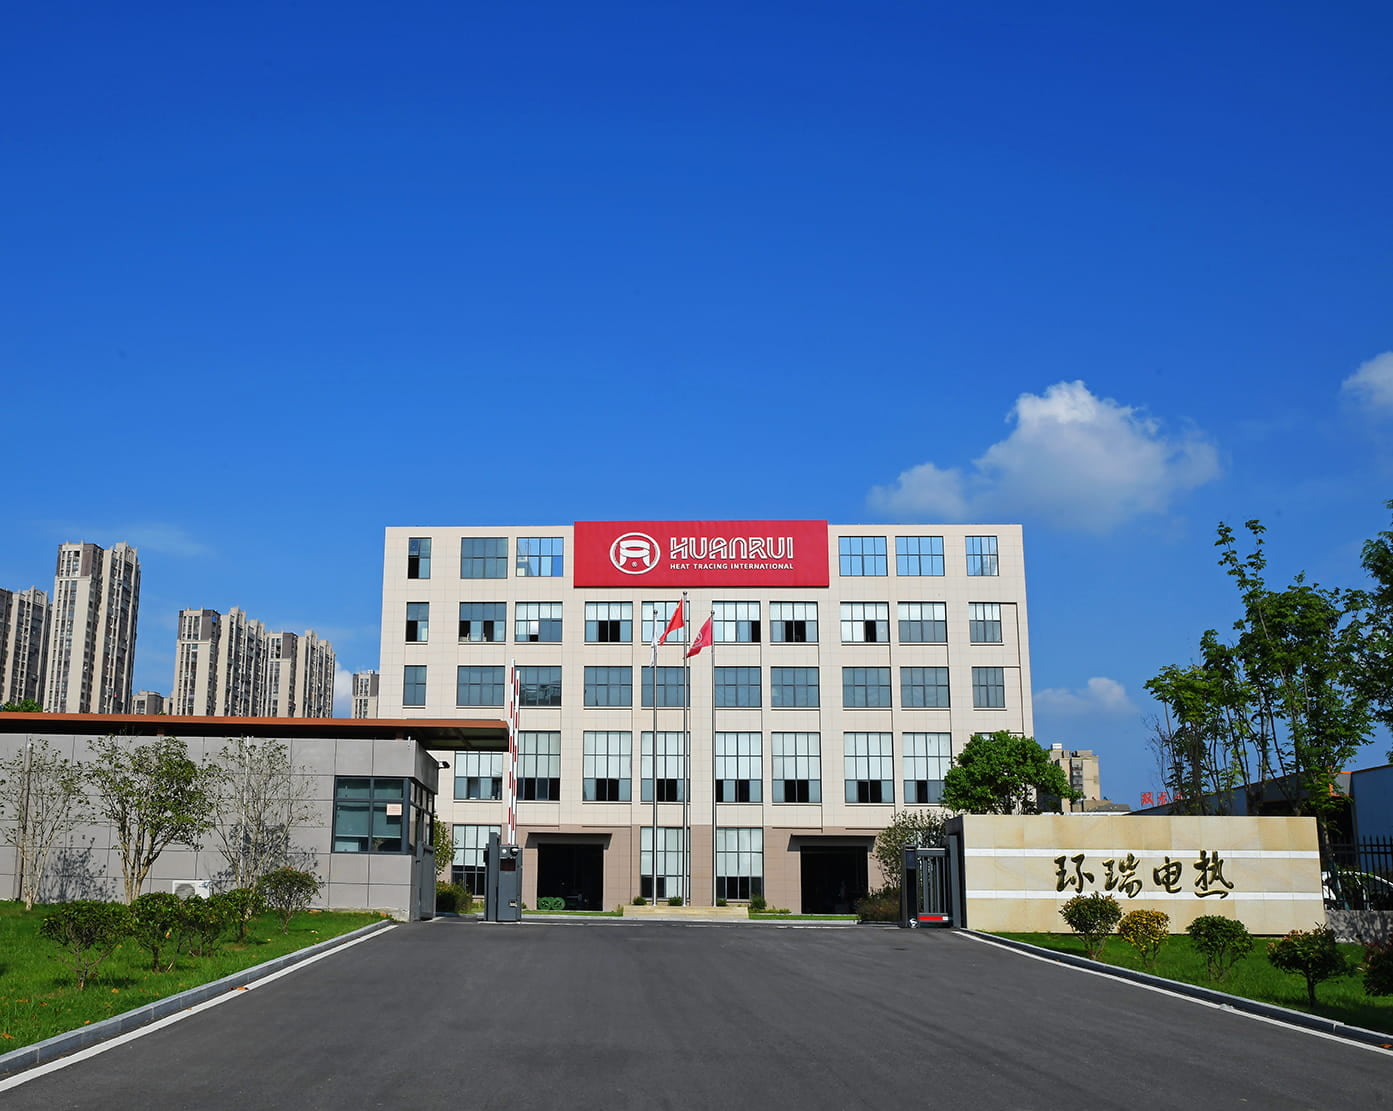 Feiern Sie herzlich das erfolgreiche Angebot von Anhui Huanrui für das Beschaffungsprojekt für elektrische Heizbänder und Zubehör von CNPC
